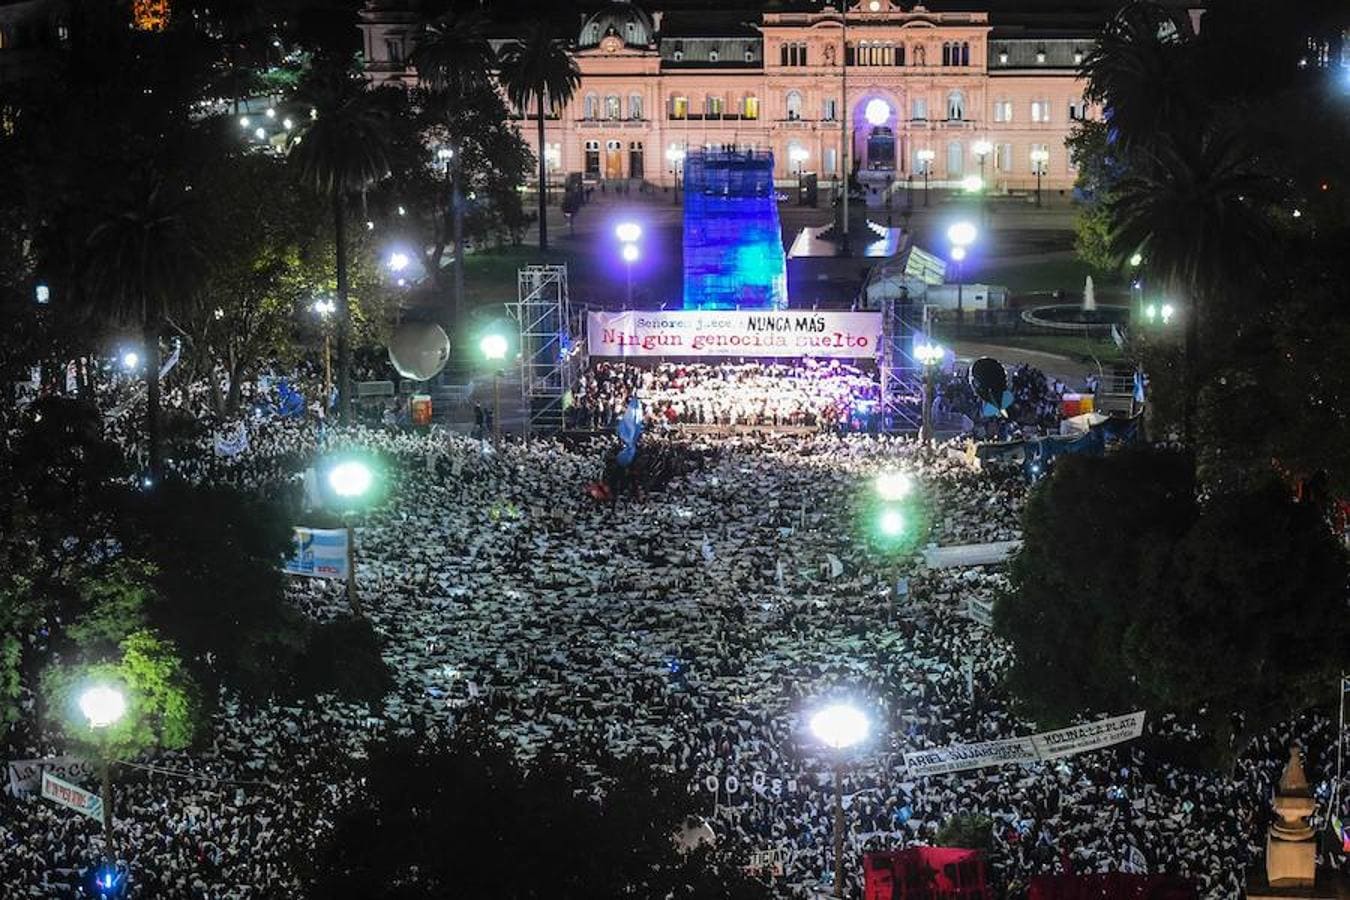 Las Madres y Abuelas de la Plaza de Mayo llevan desde abril de 1977 utilizando el pañuelo blanco para reclamar por sus hijos desaparecidos durante la dictadura